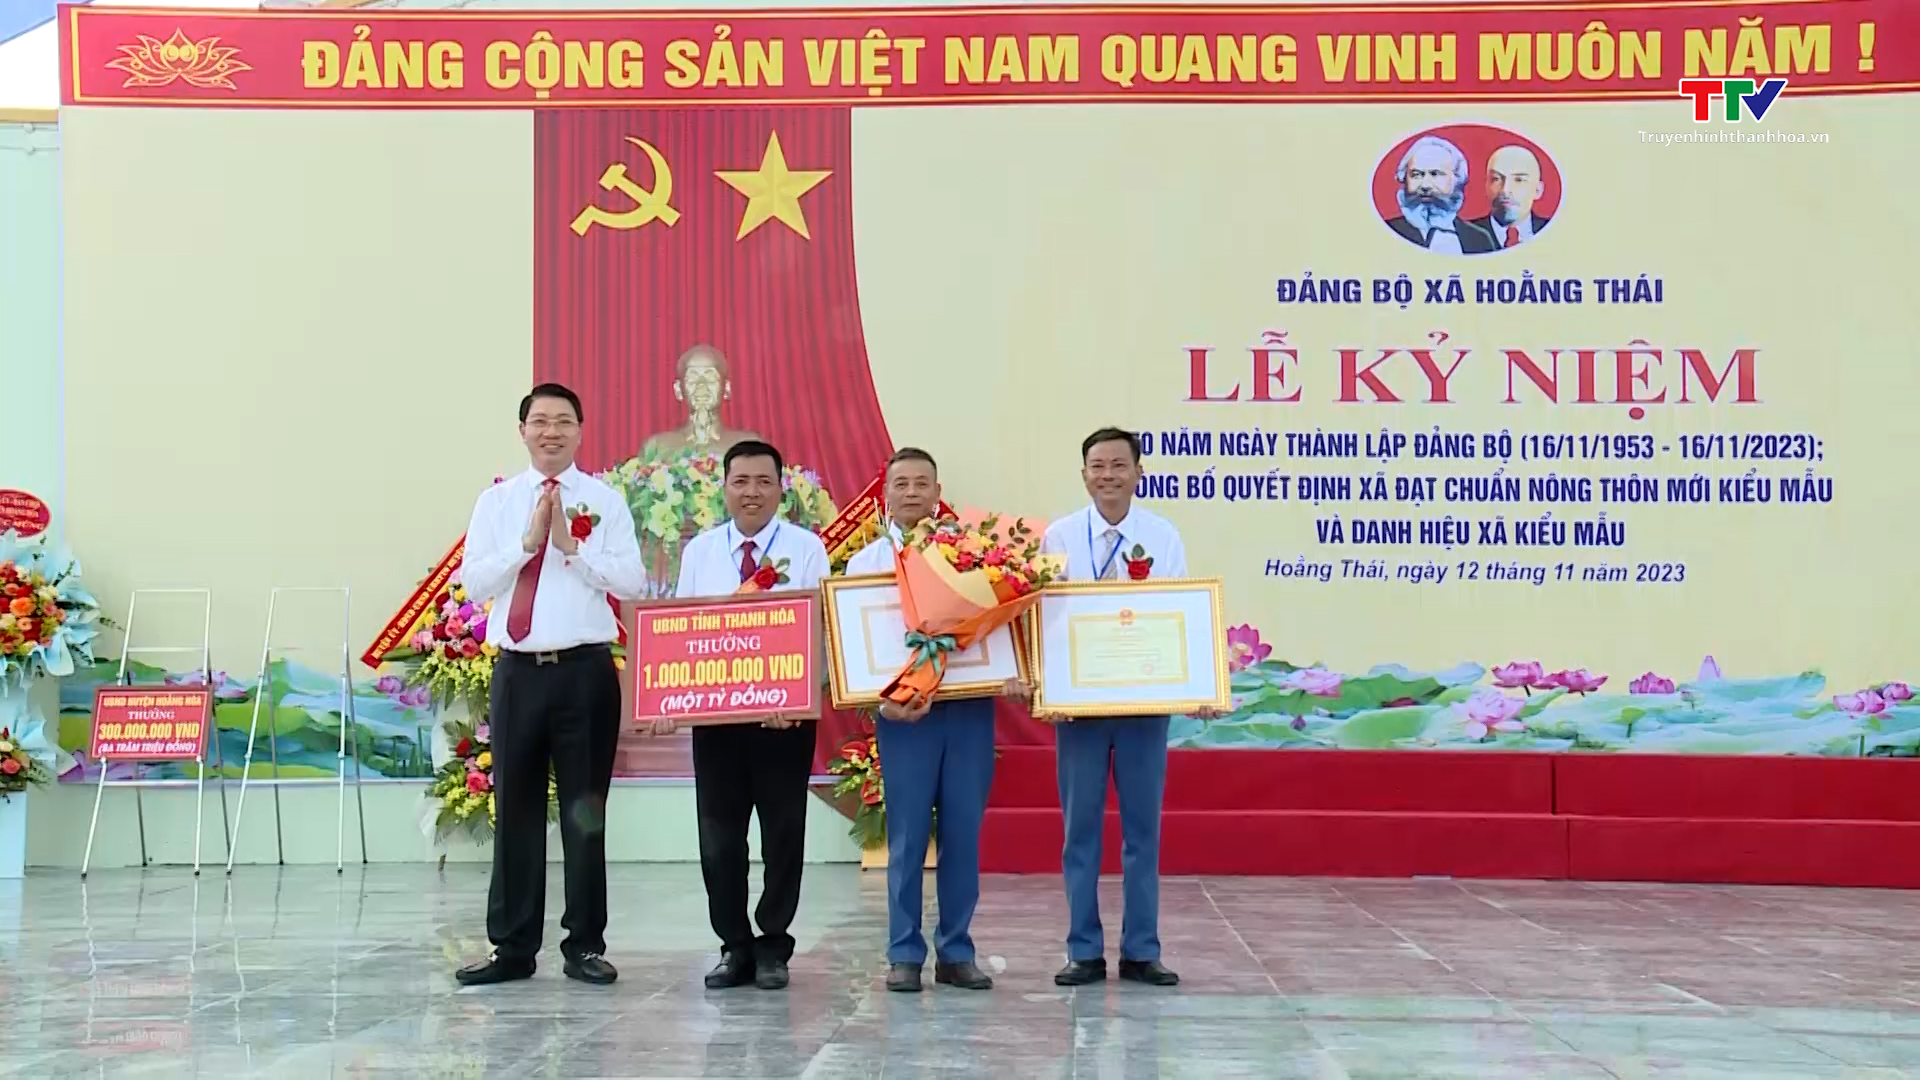 Đảng bộ xã Hoằng Thái kỷ niệm 70 năm thành lập và công bố Quyết định  xã đạt chuẩn nông thôn mới kiểu mẫu- Ảnh 2.